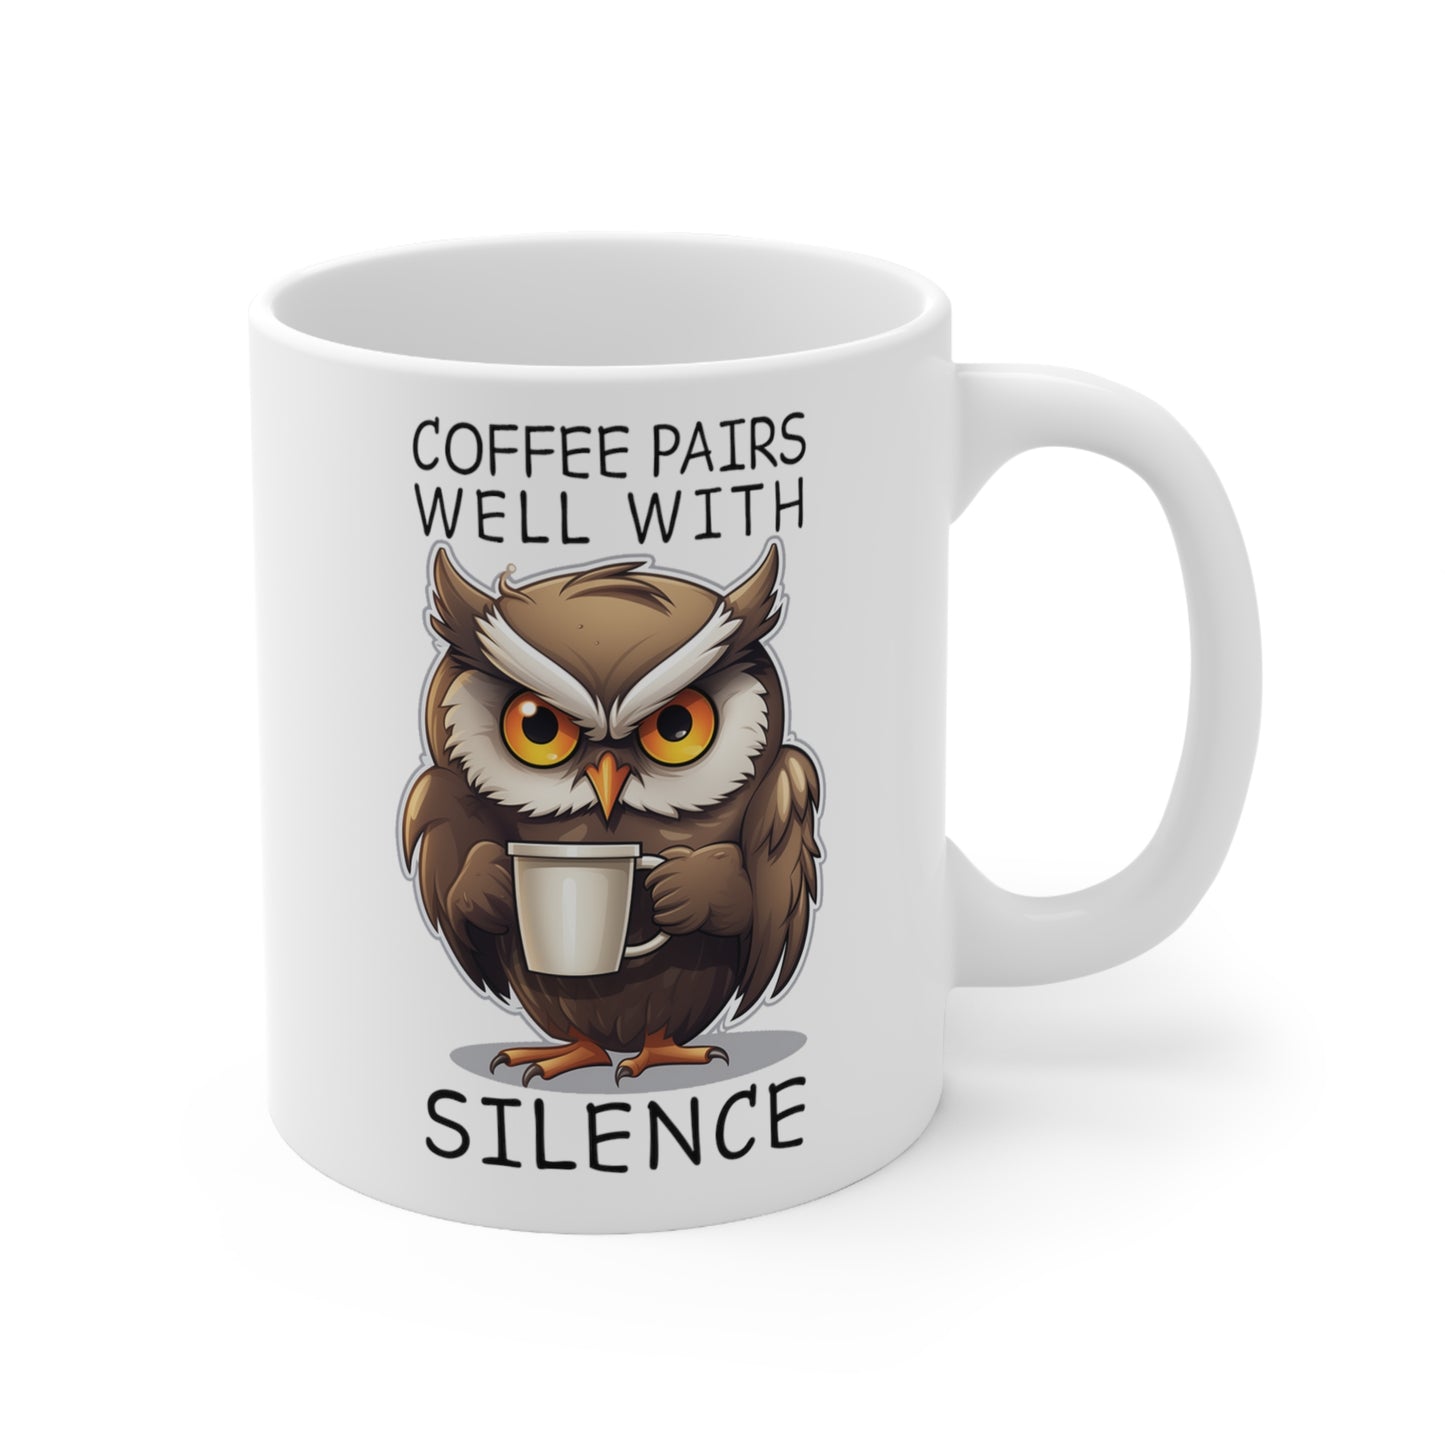 Coffee Pairs Well With Silence 11oz Coffee Mug.